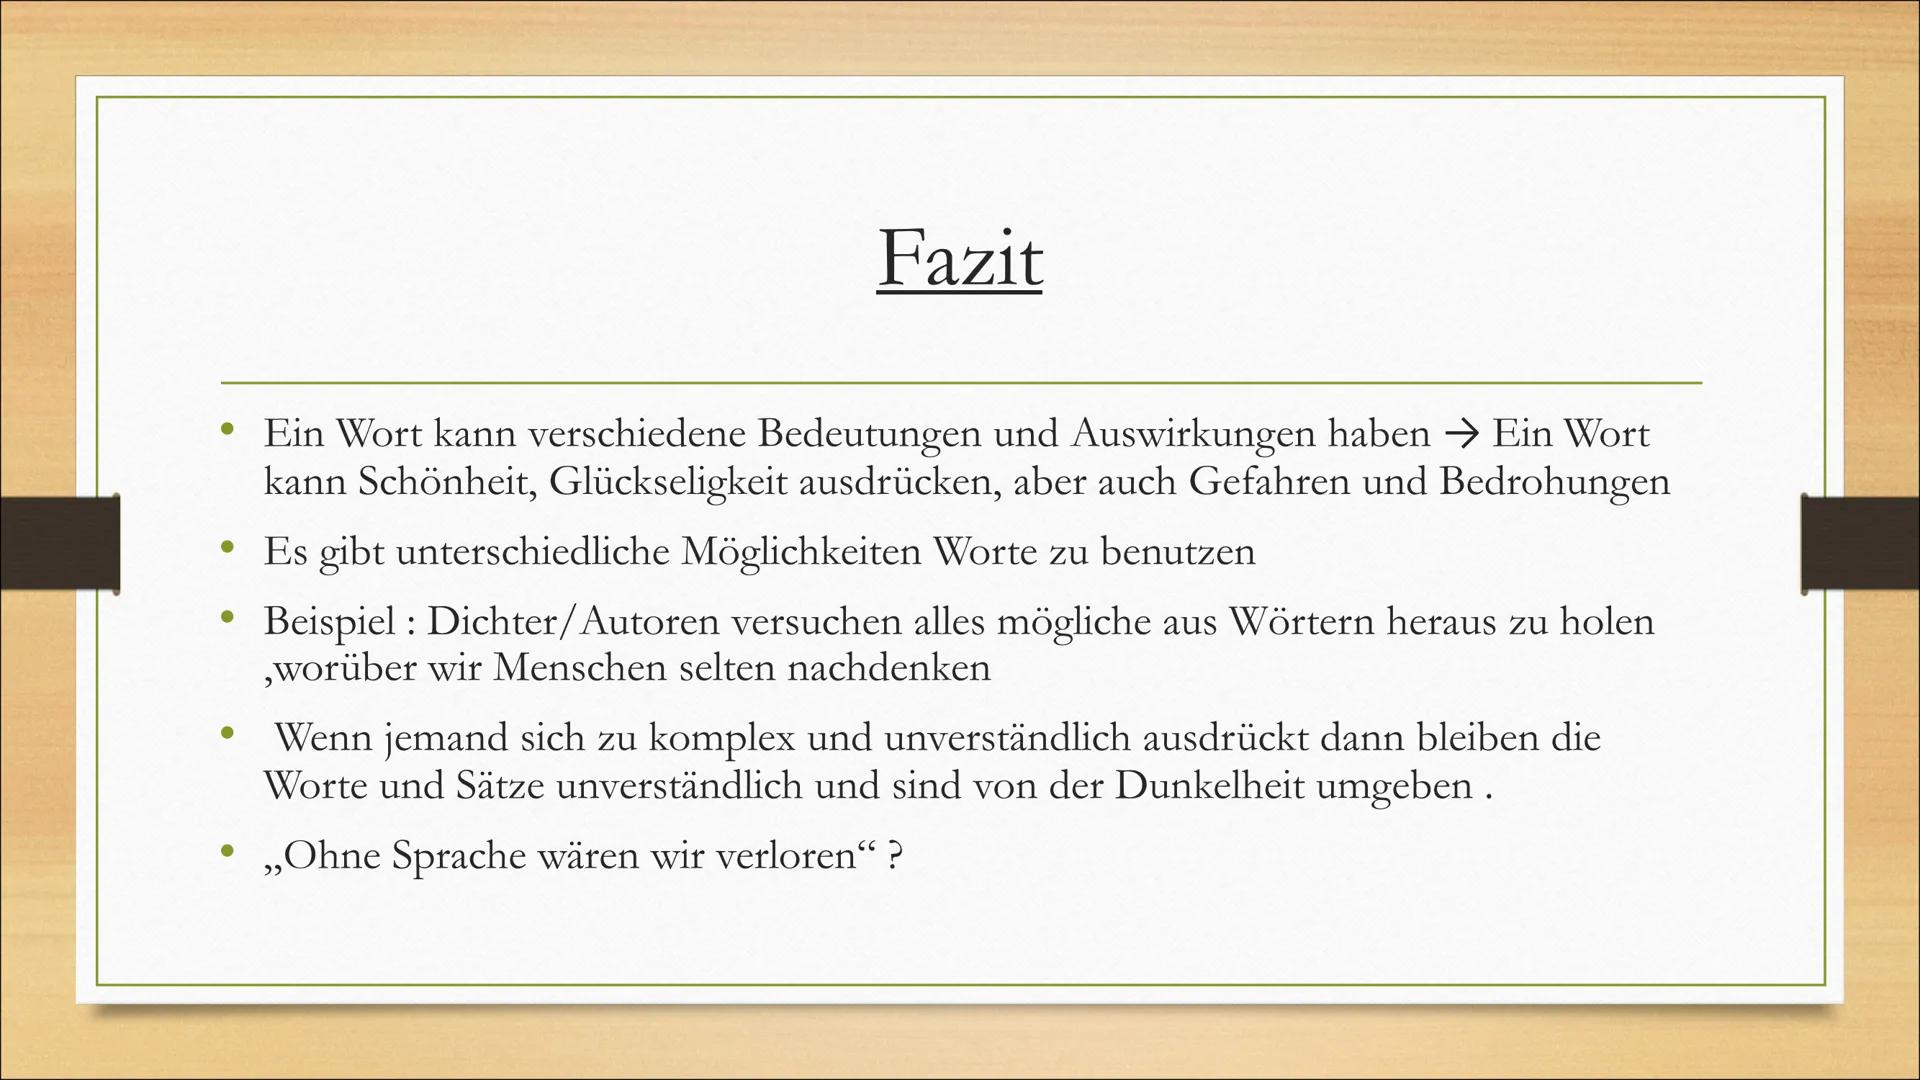 Ein Wort (1941)
Gottfried Benn
Naomi Milbers Gliederung
Infos über Gottfried Benn
Analyse des Gedichtes ,,Ein Wort"
• Fazit
●
Quellen
→Inhal